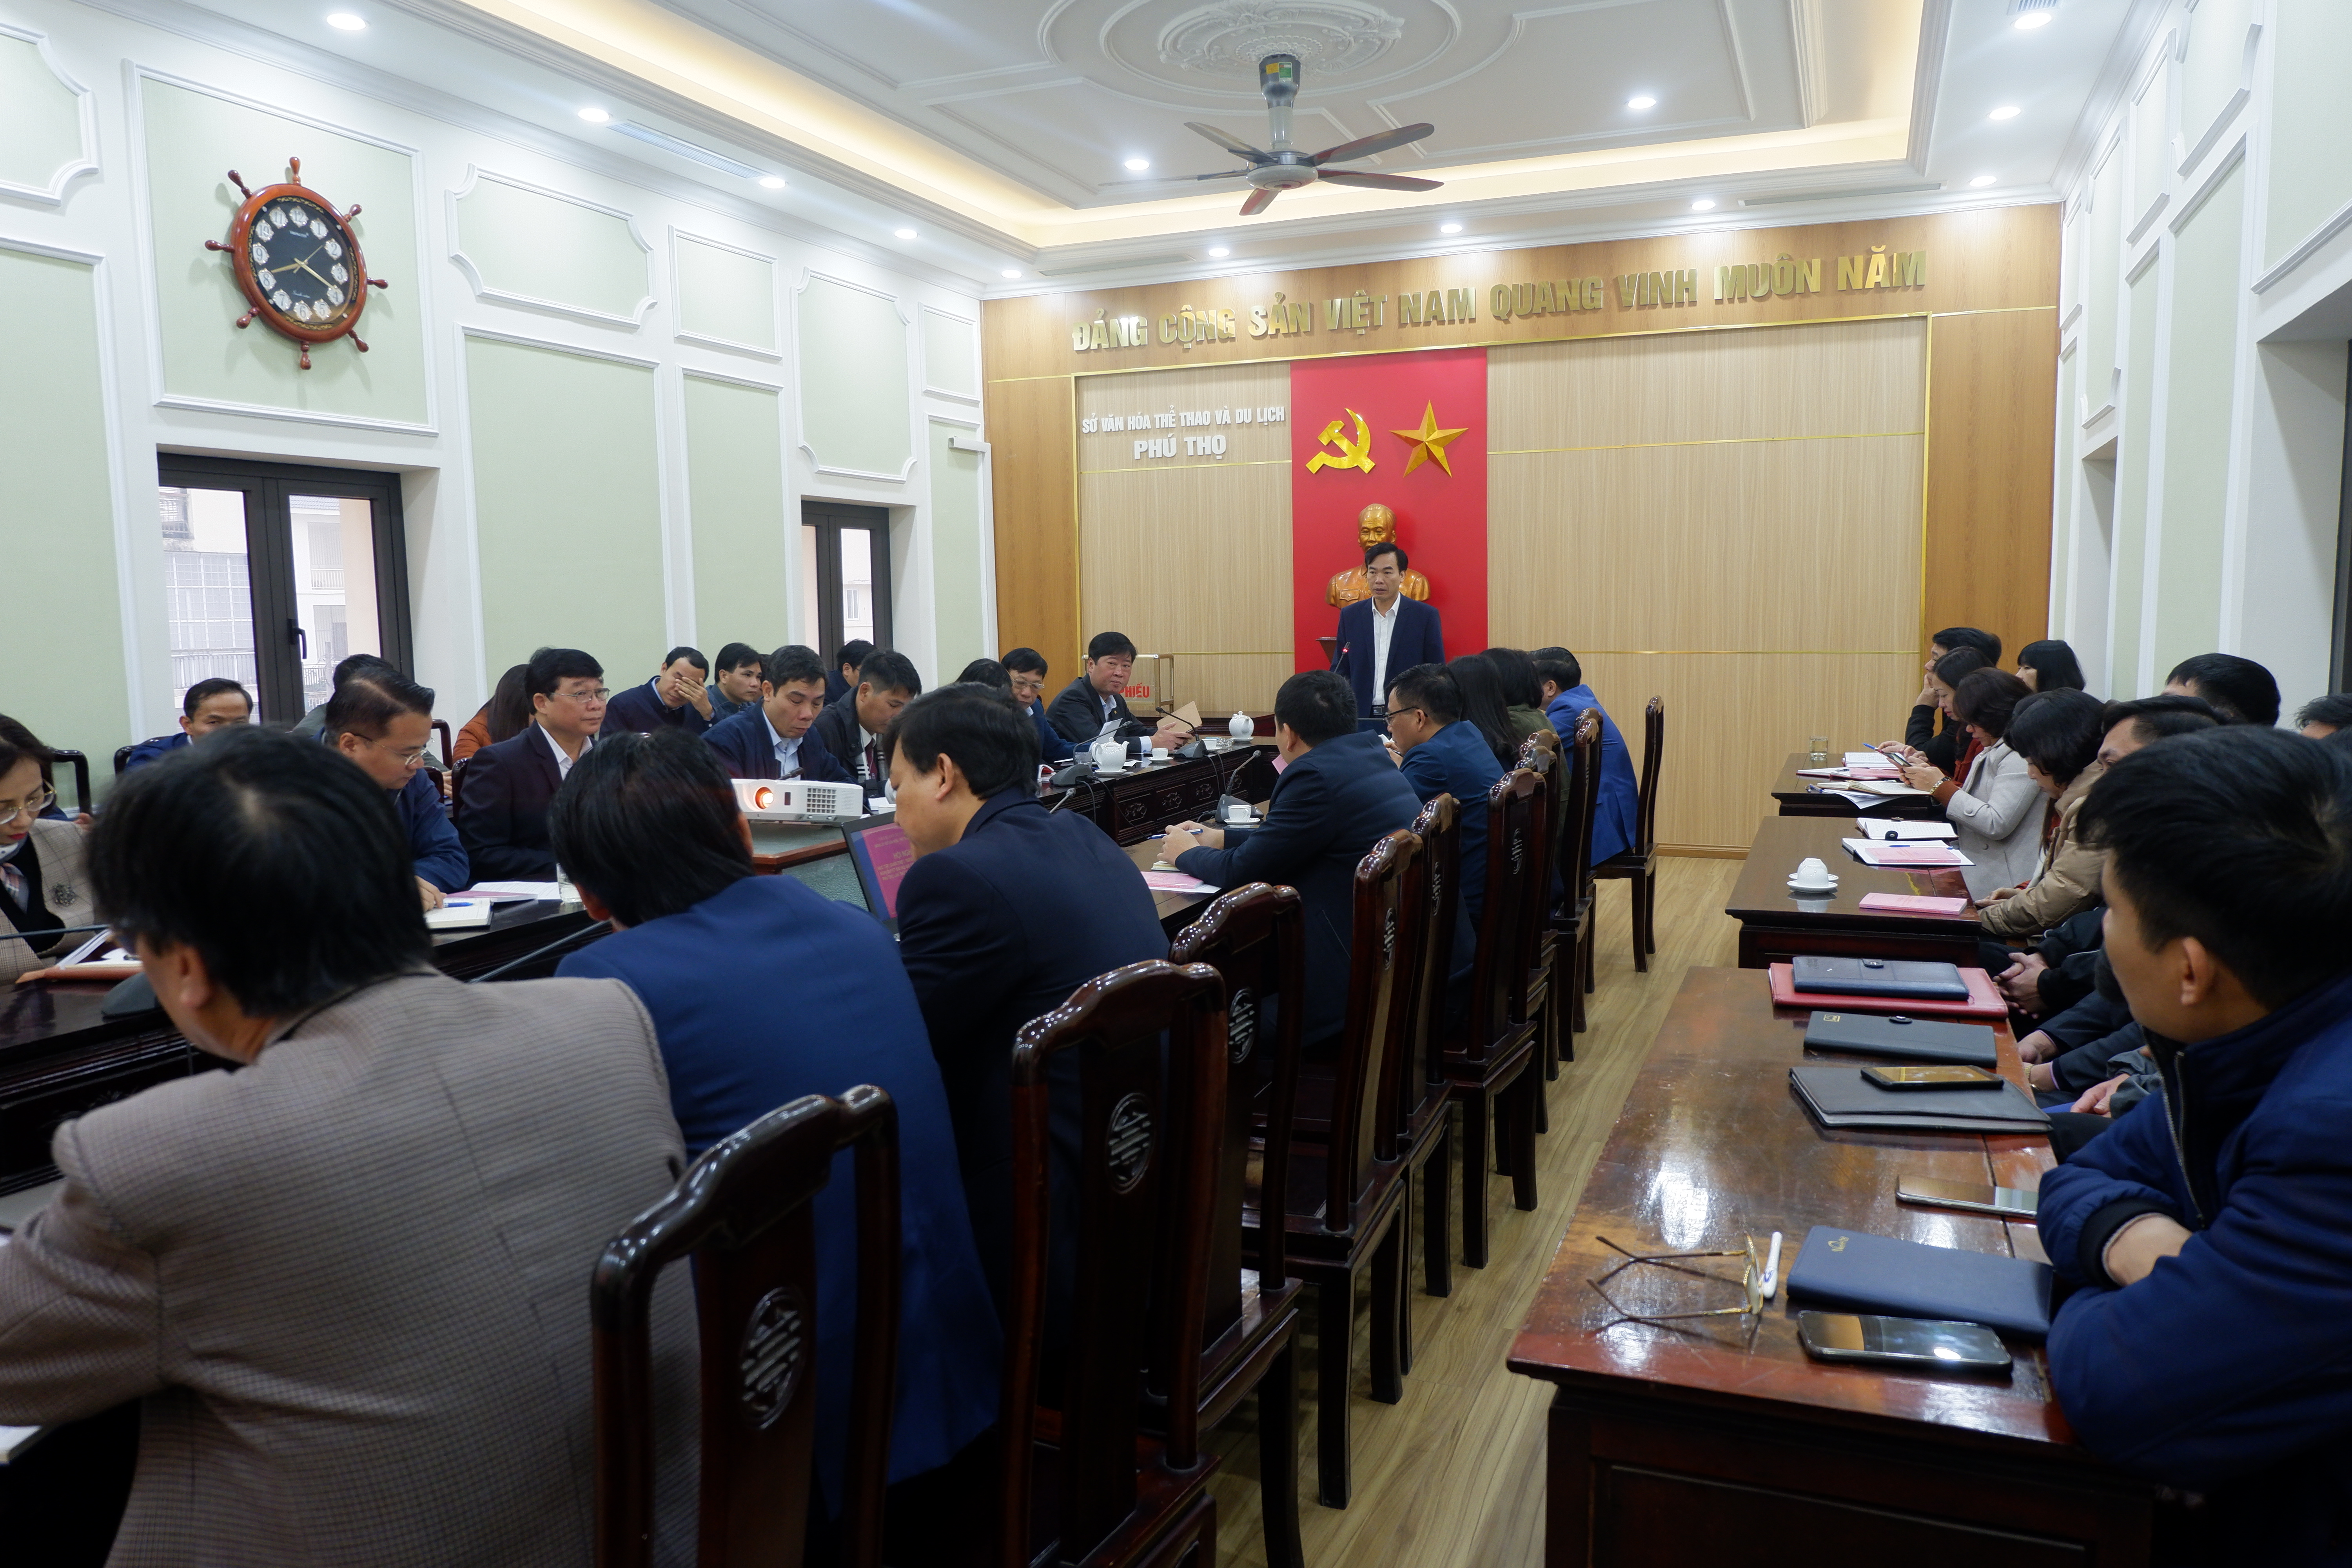 Hội nghị học tập, quán triệt, tuyên truyền và triển khai thực hiện Nghị quyết Đại hội Đại biểu Đảng bộ tỉnh Phú Thọ lần thứ XIX, nhiệm kỳ 2020 - 2025